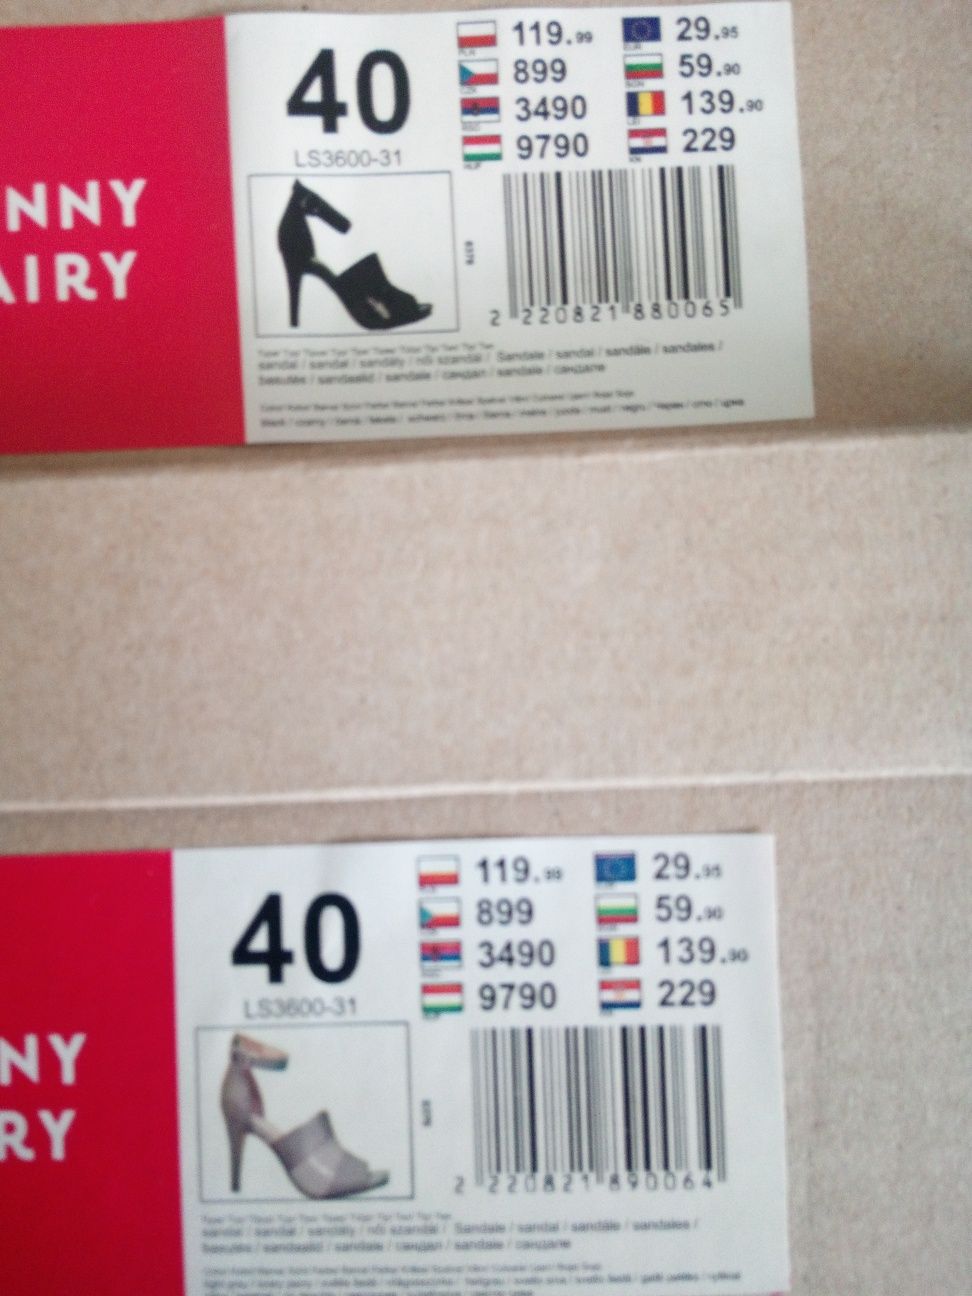 85. Dwie pary sandałki damskie rozmiar 40 firmy Jenny Fairy